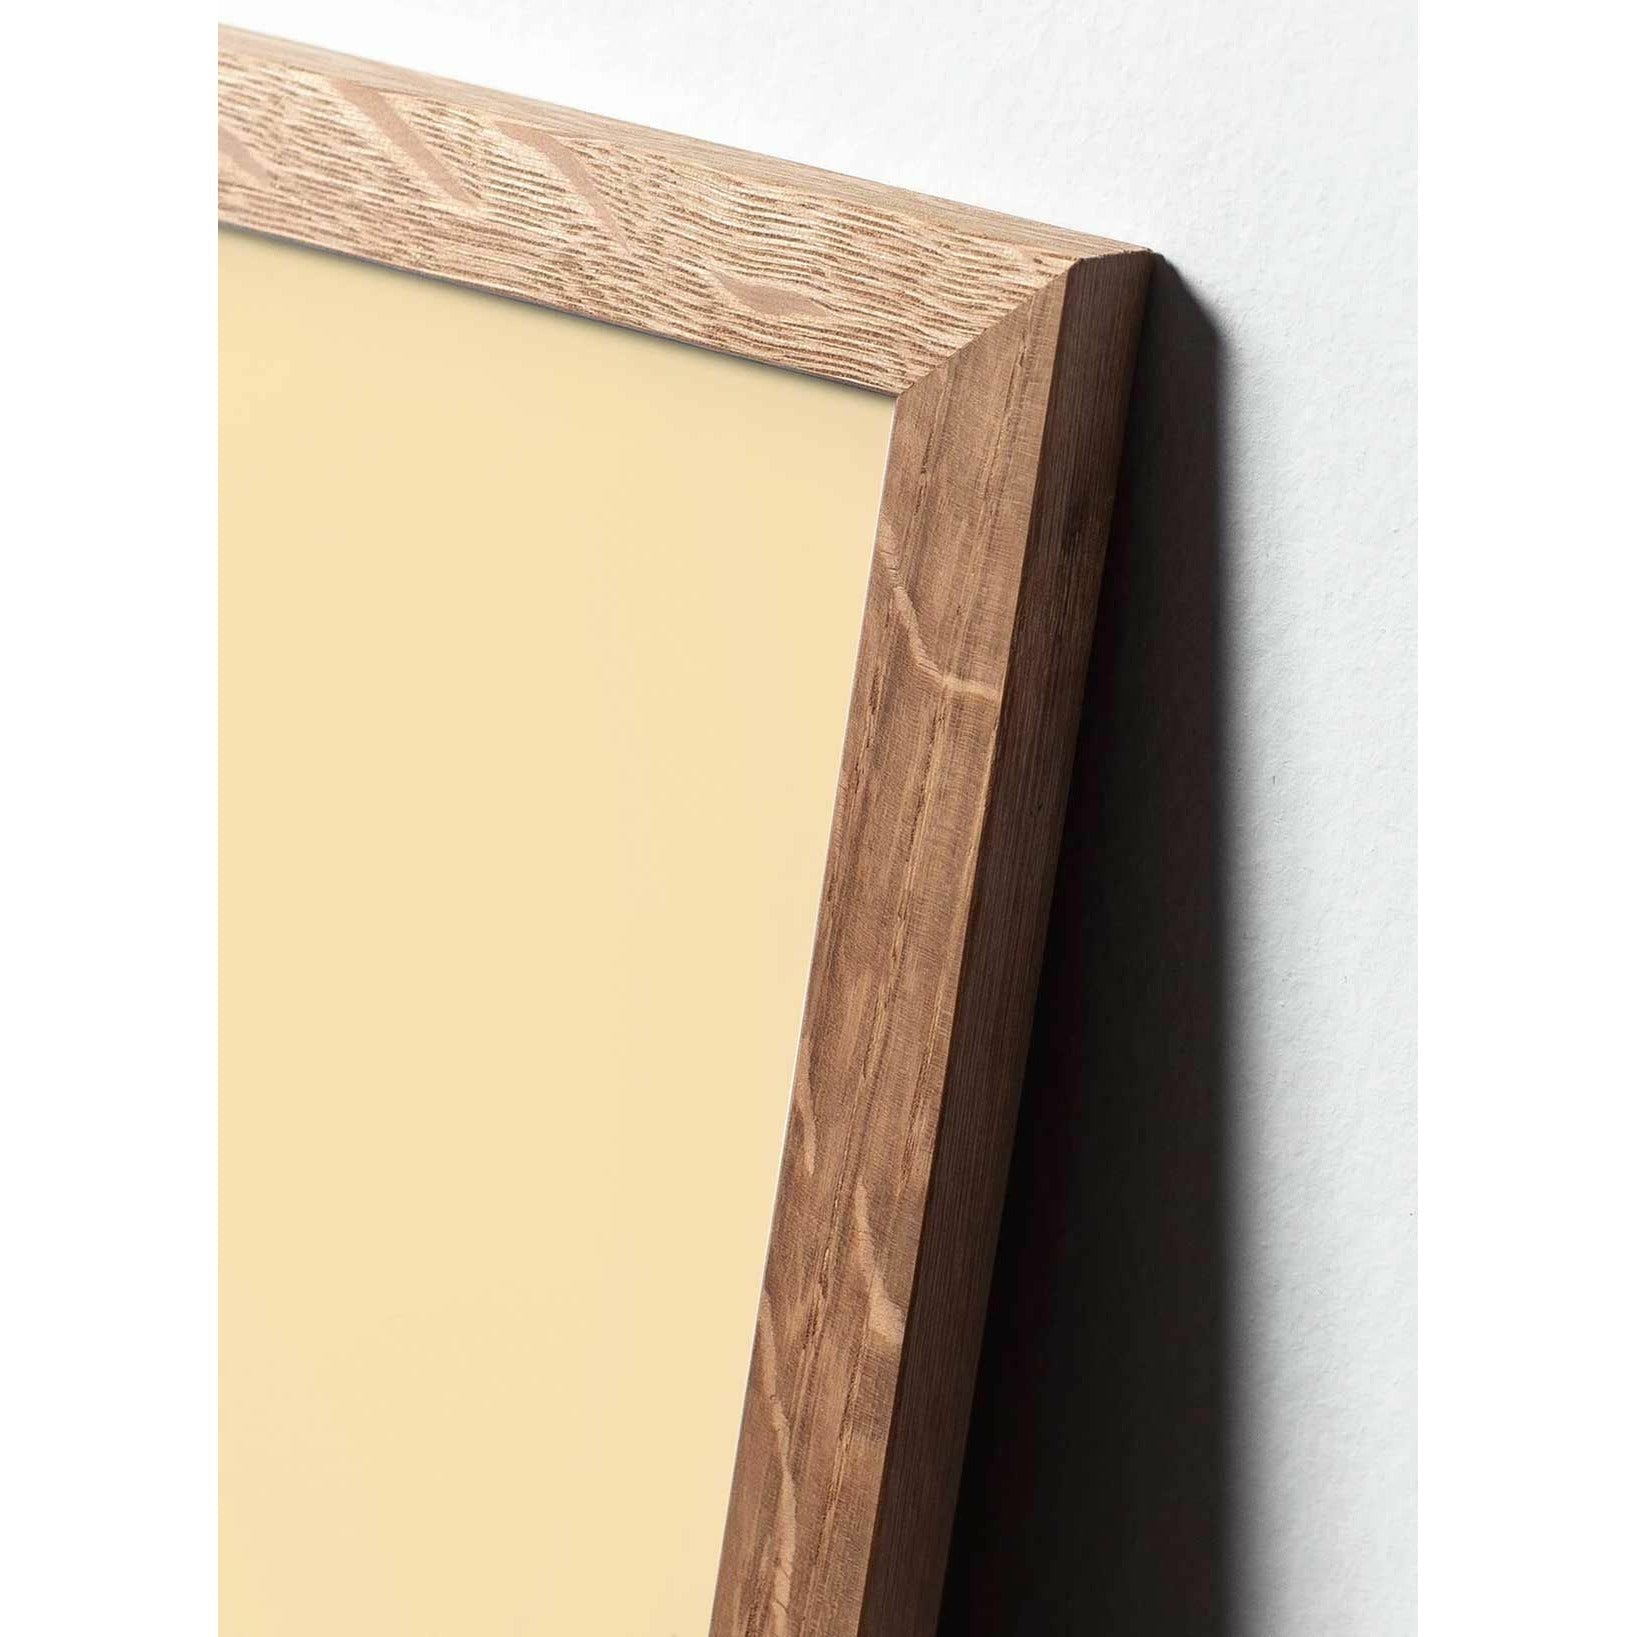 Pomysły Pine Classic Plakat, rama wykonana z jasnego drewna 30x40 cm, tło w kolorze piasku